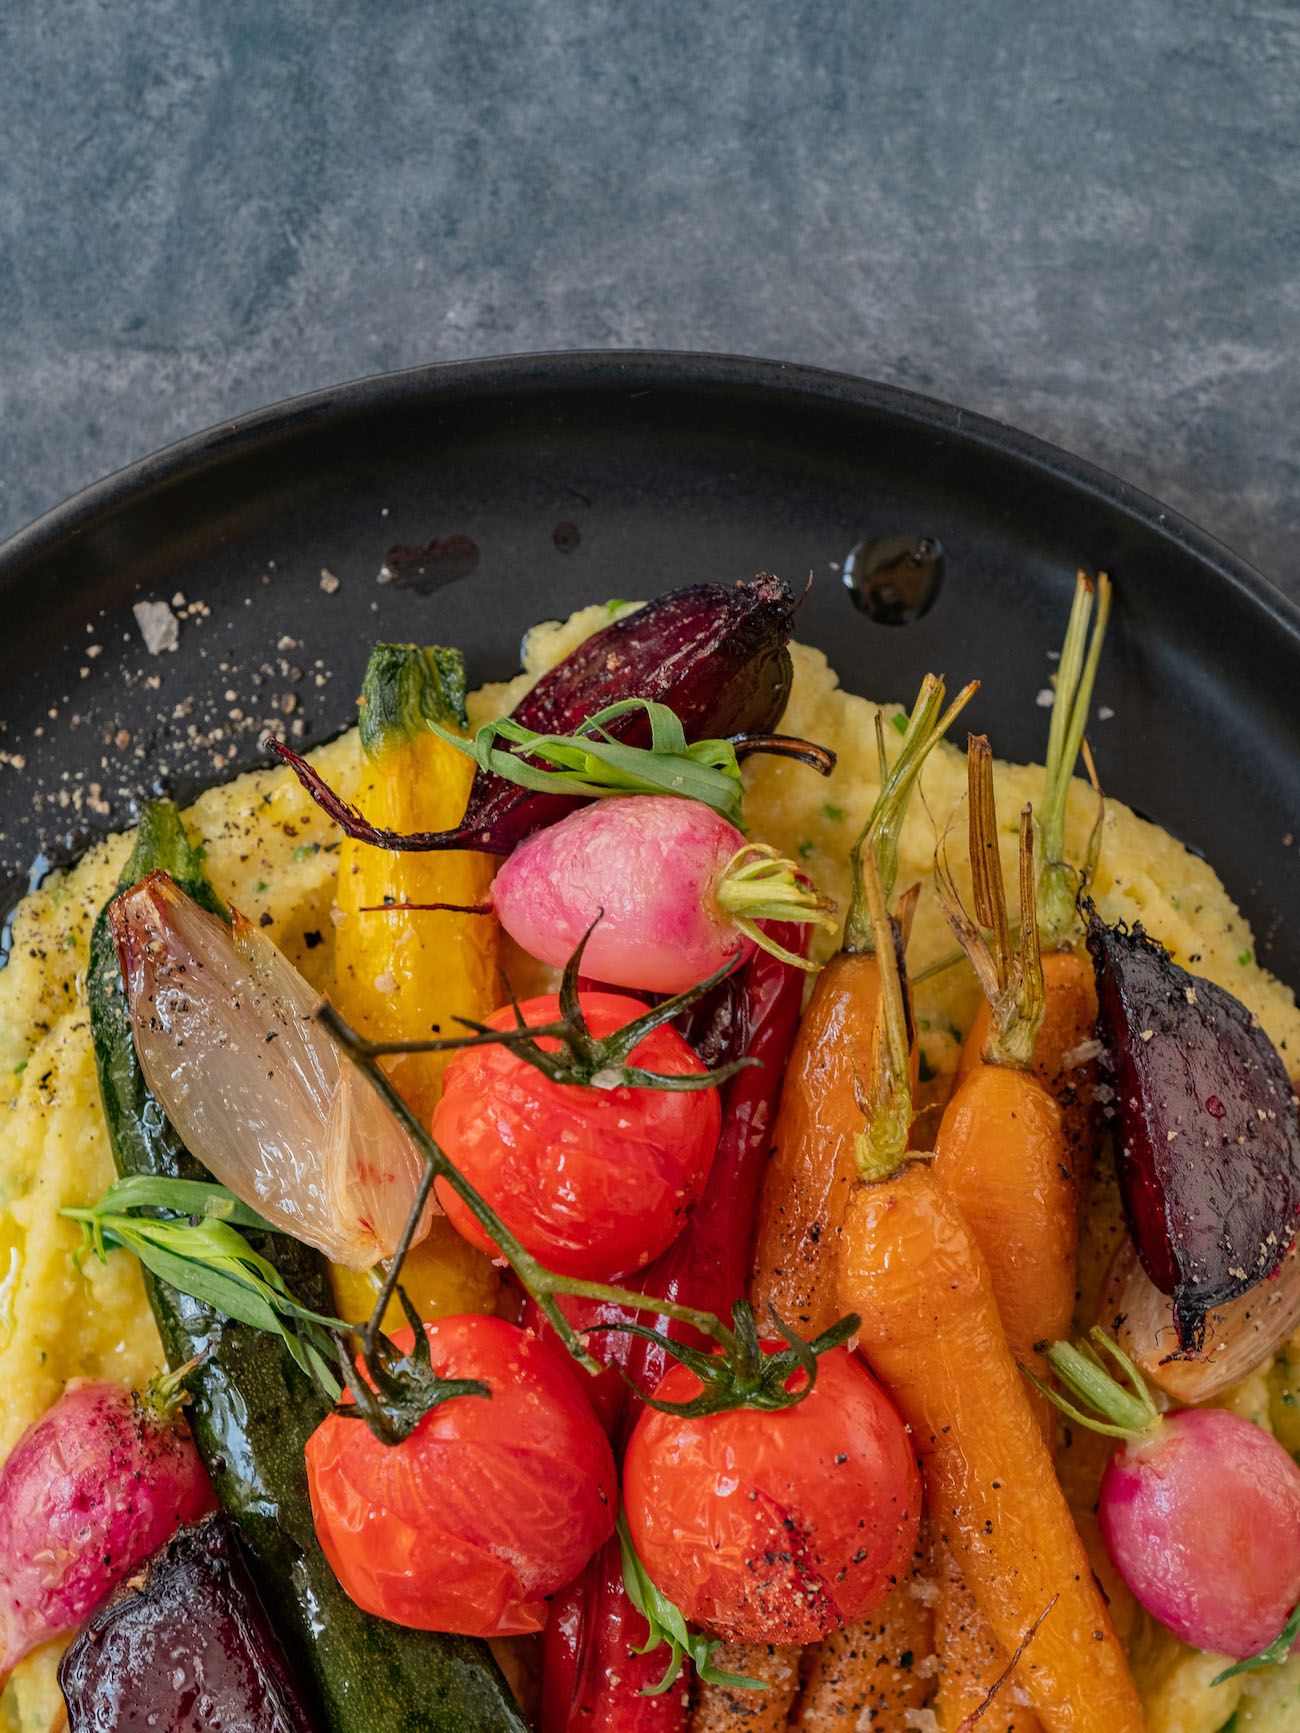 Rezept, Foodblo, About Fuel, Cremige Polenta mit Sommergemüse, Zucchini, Tomaten, Rote Bete